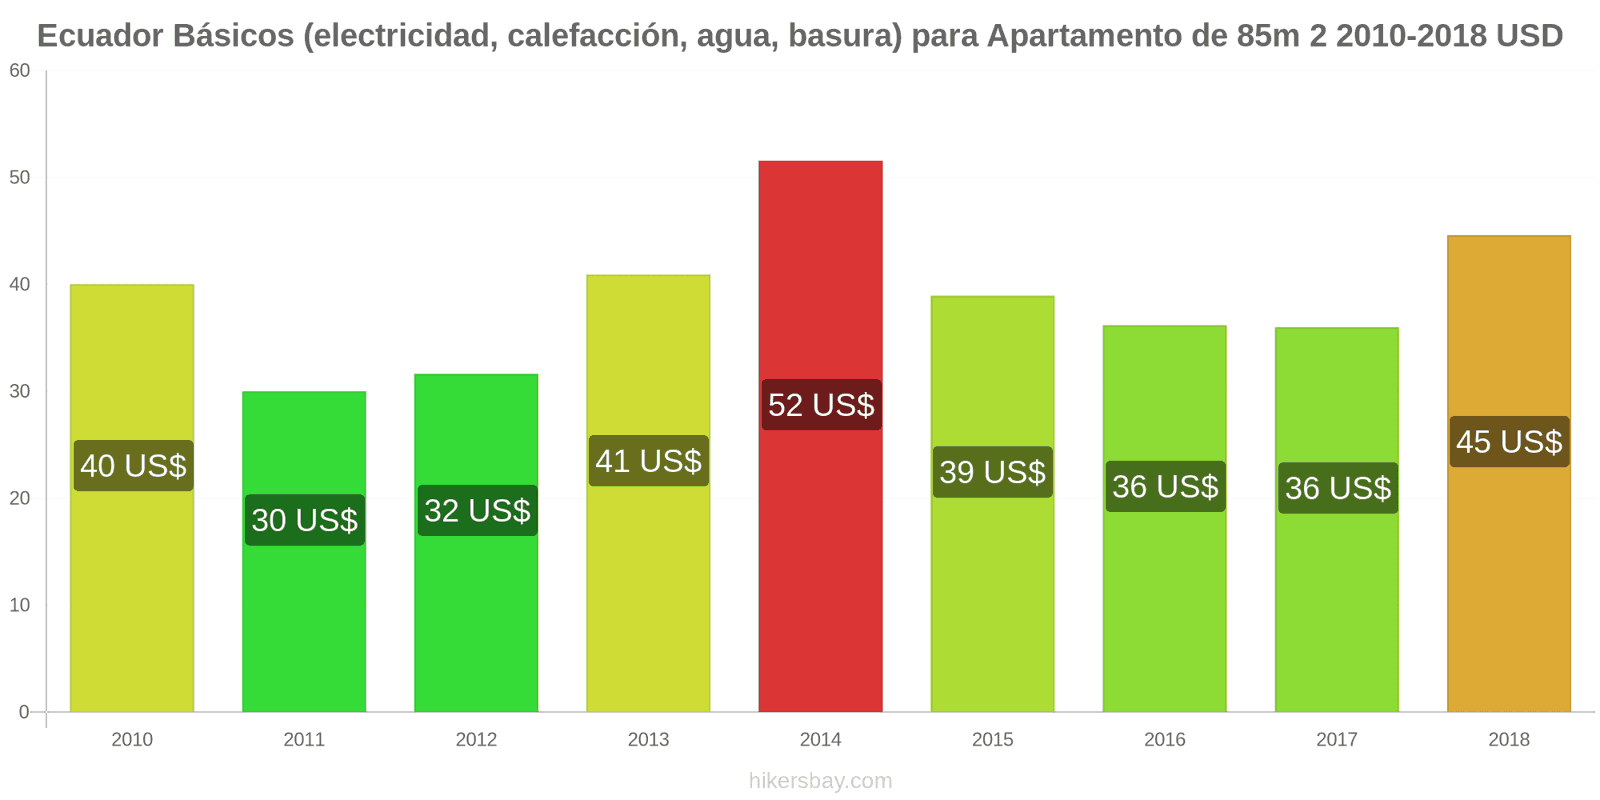 Ecuador cambios de precios Servicios (electricidad, calefacción, agua, basura) para un apartamento de 85m2 hikersbay.com